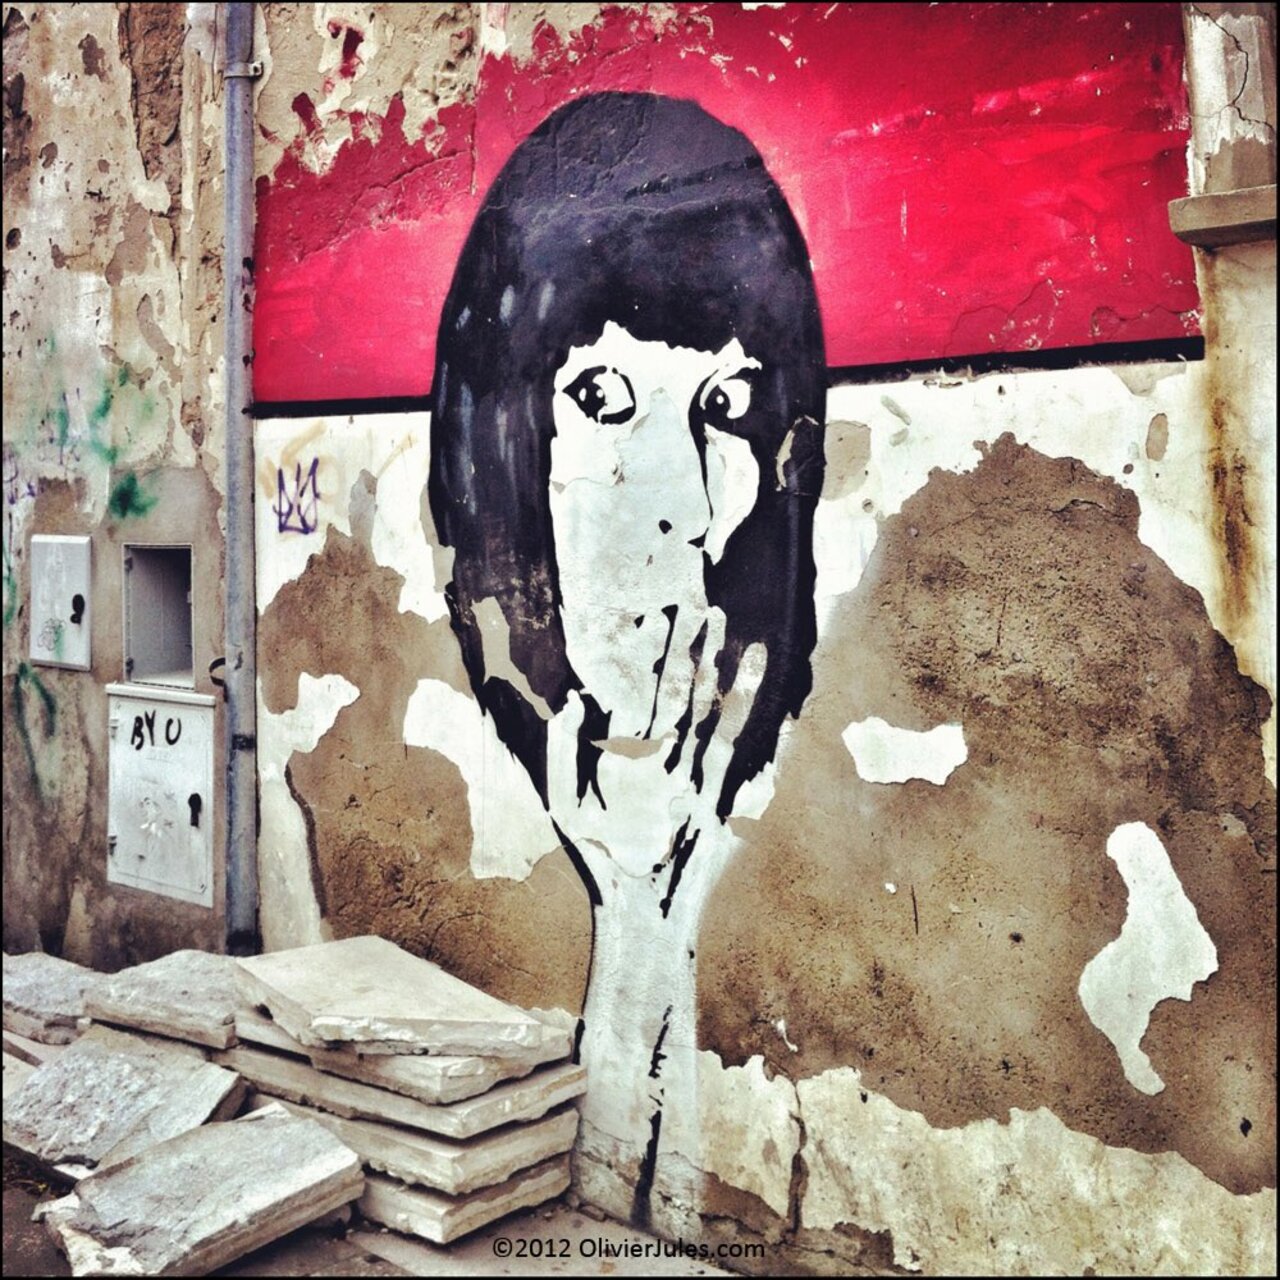 Ouch#mural #graffiti #termoli https://t.co/abTwUD6vhg